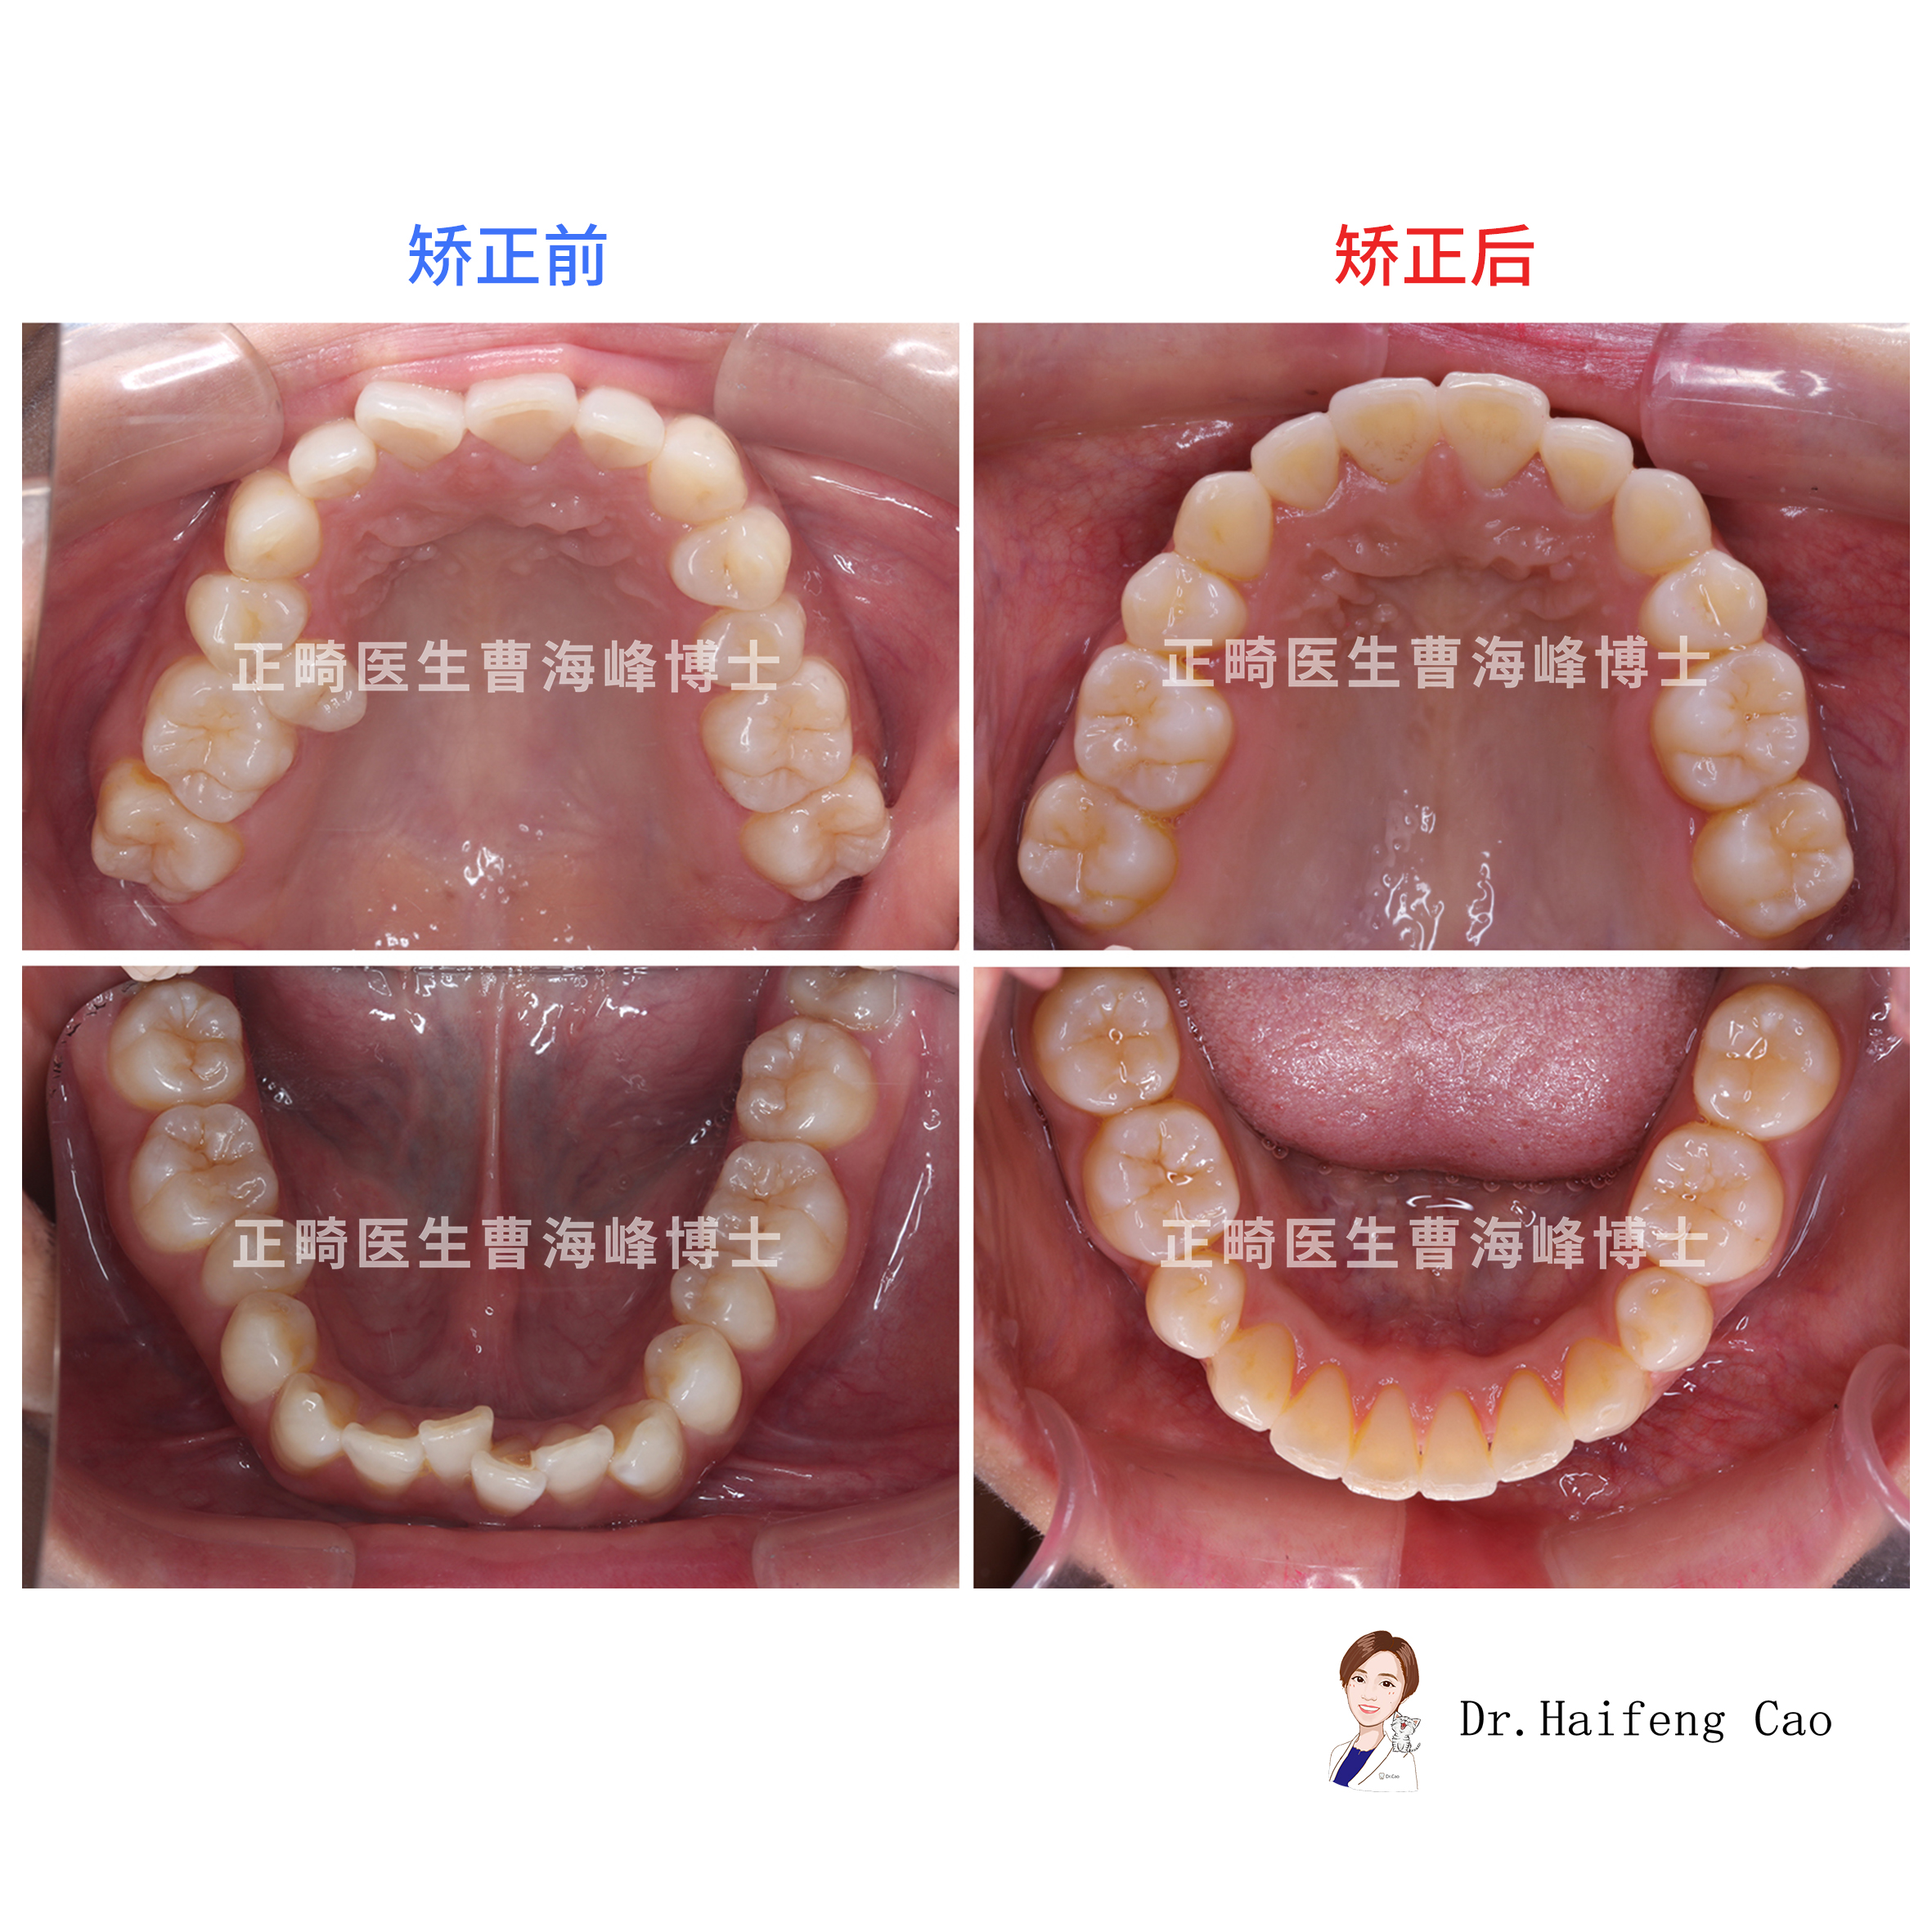 正畸治疗,拔除4颗5号牙,内收上前牙,改善唇突度,排齐牙齿.